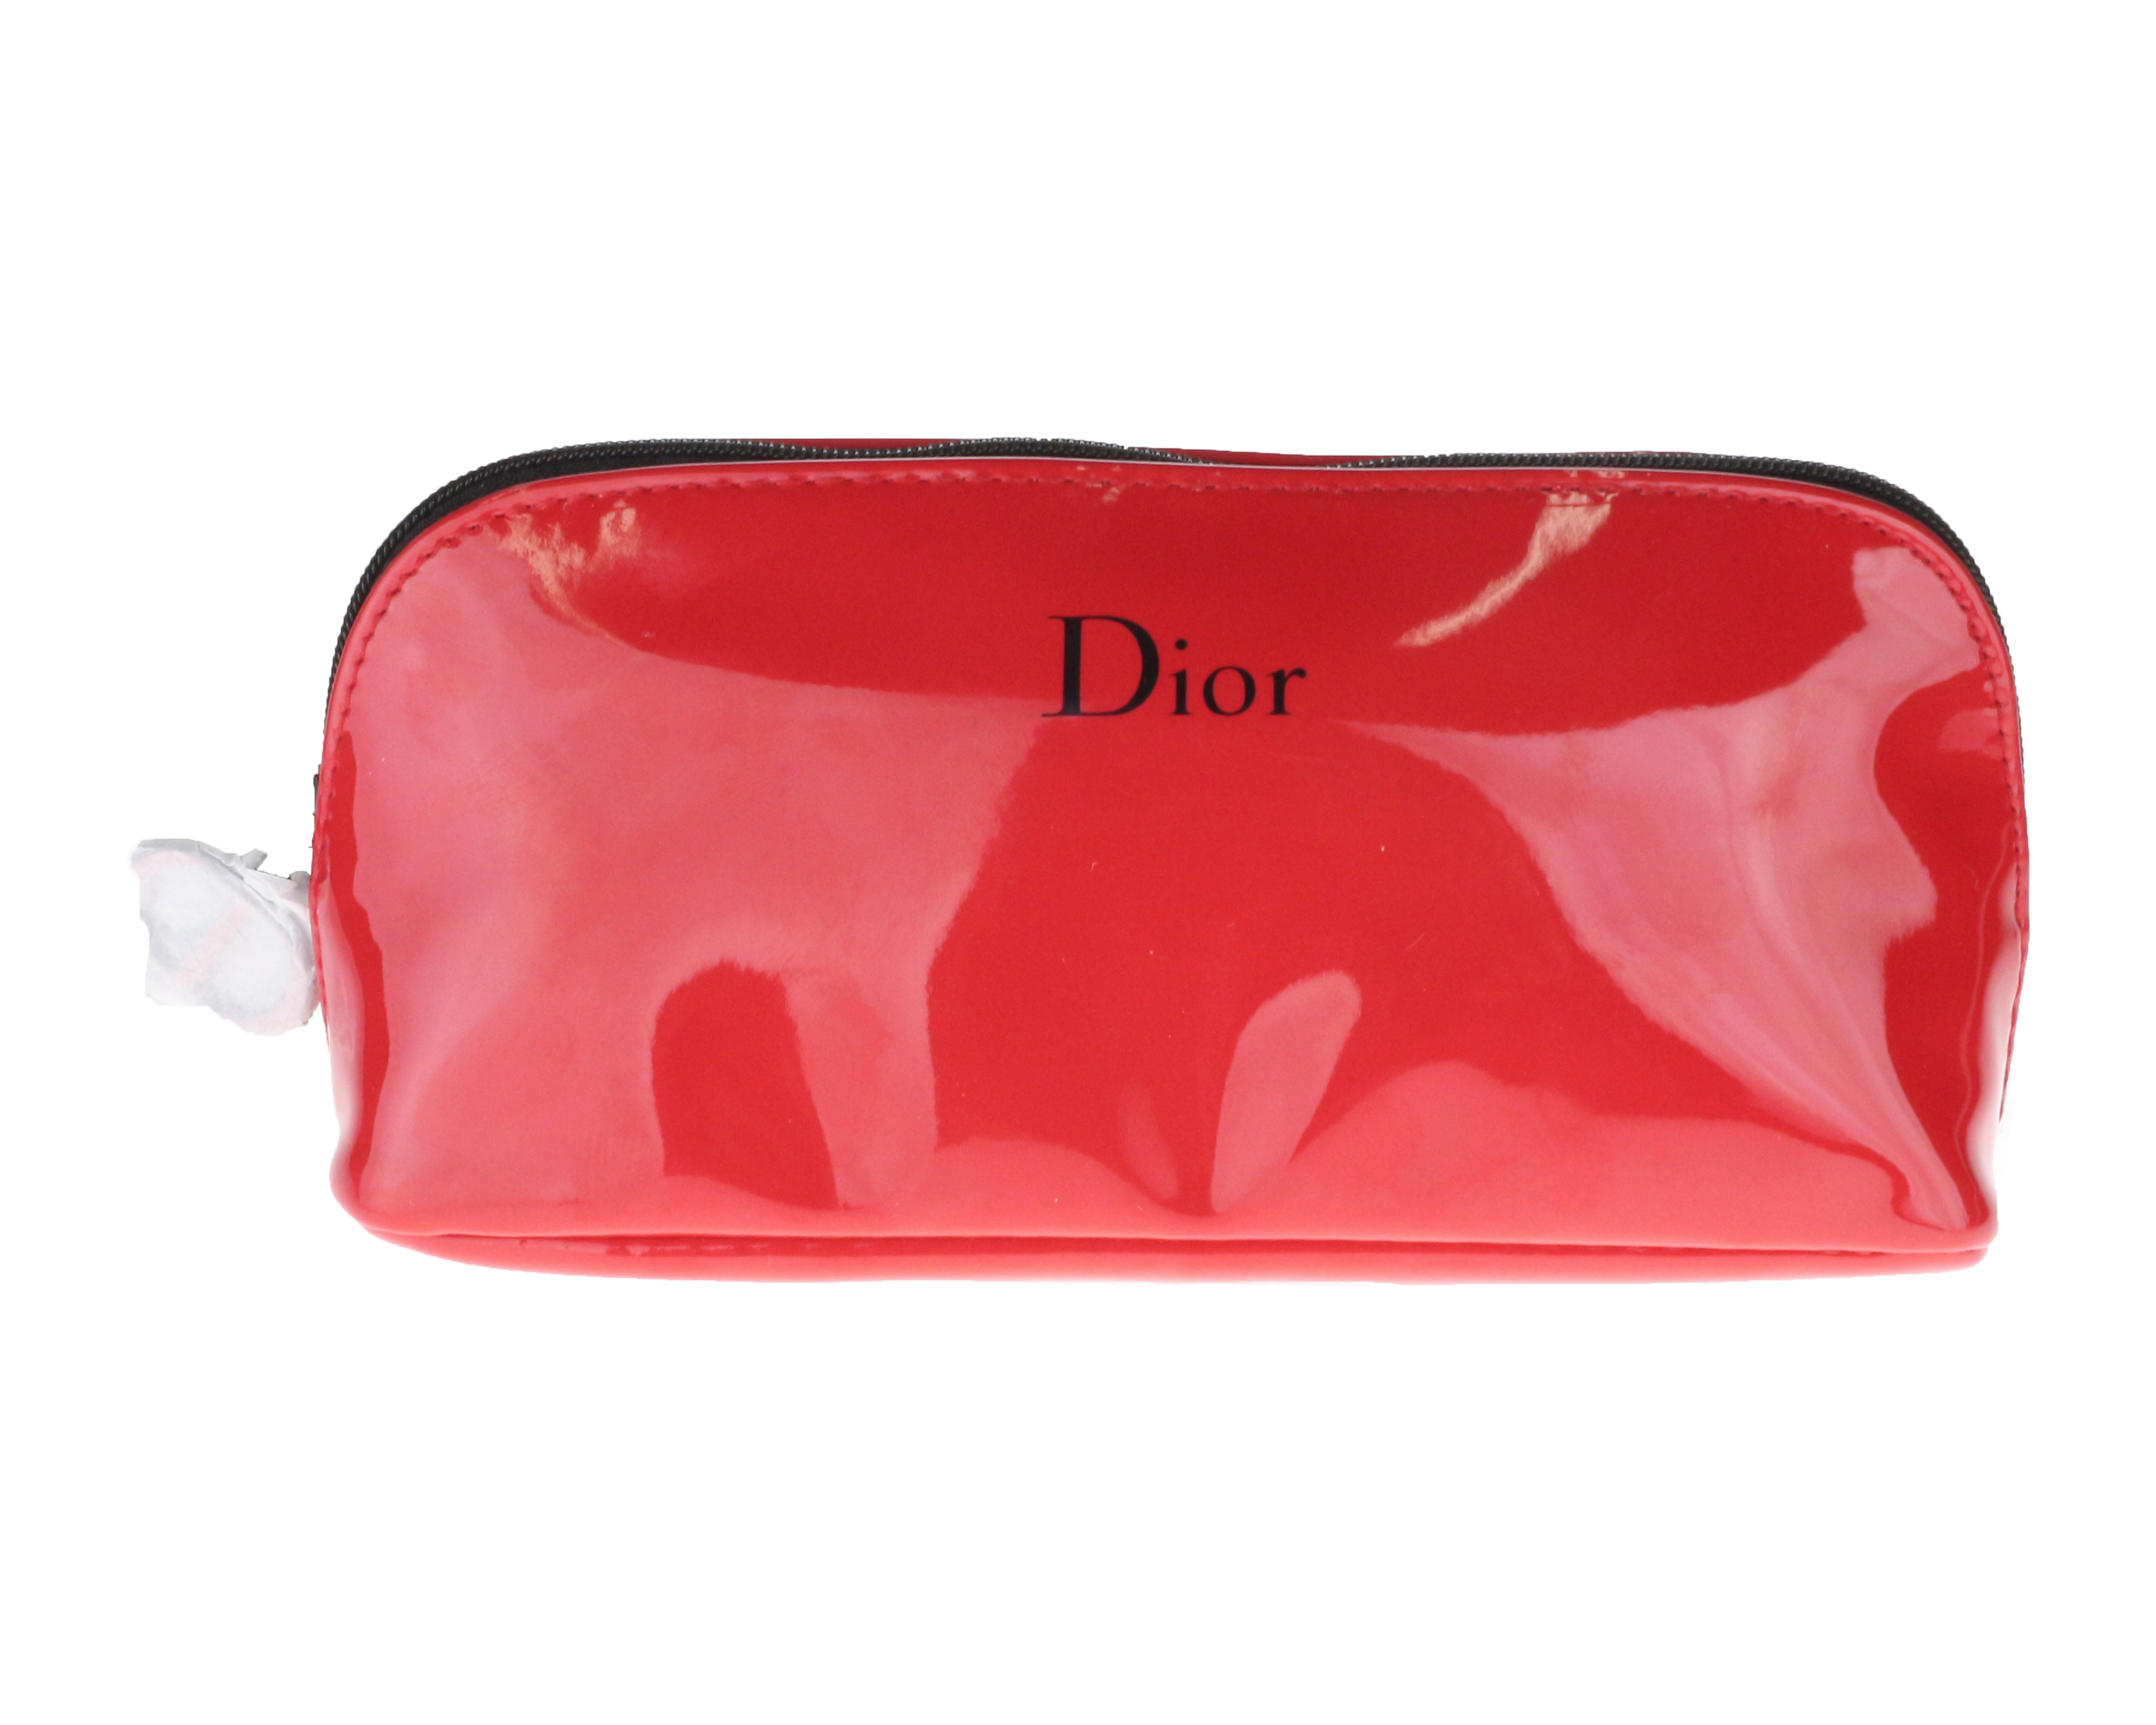 dior red makeup bag